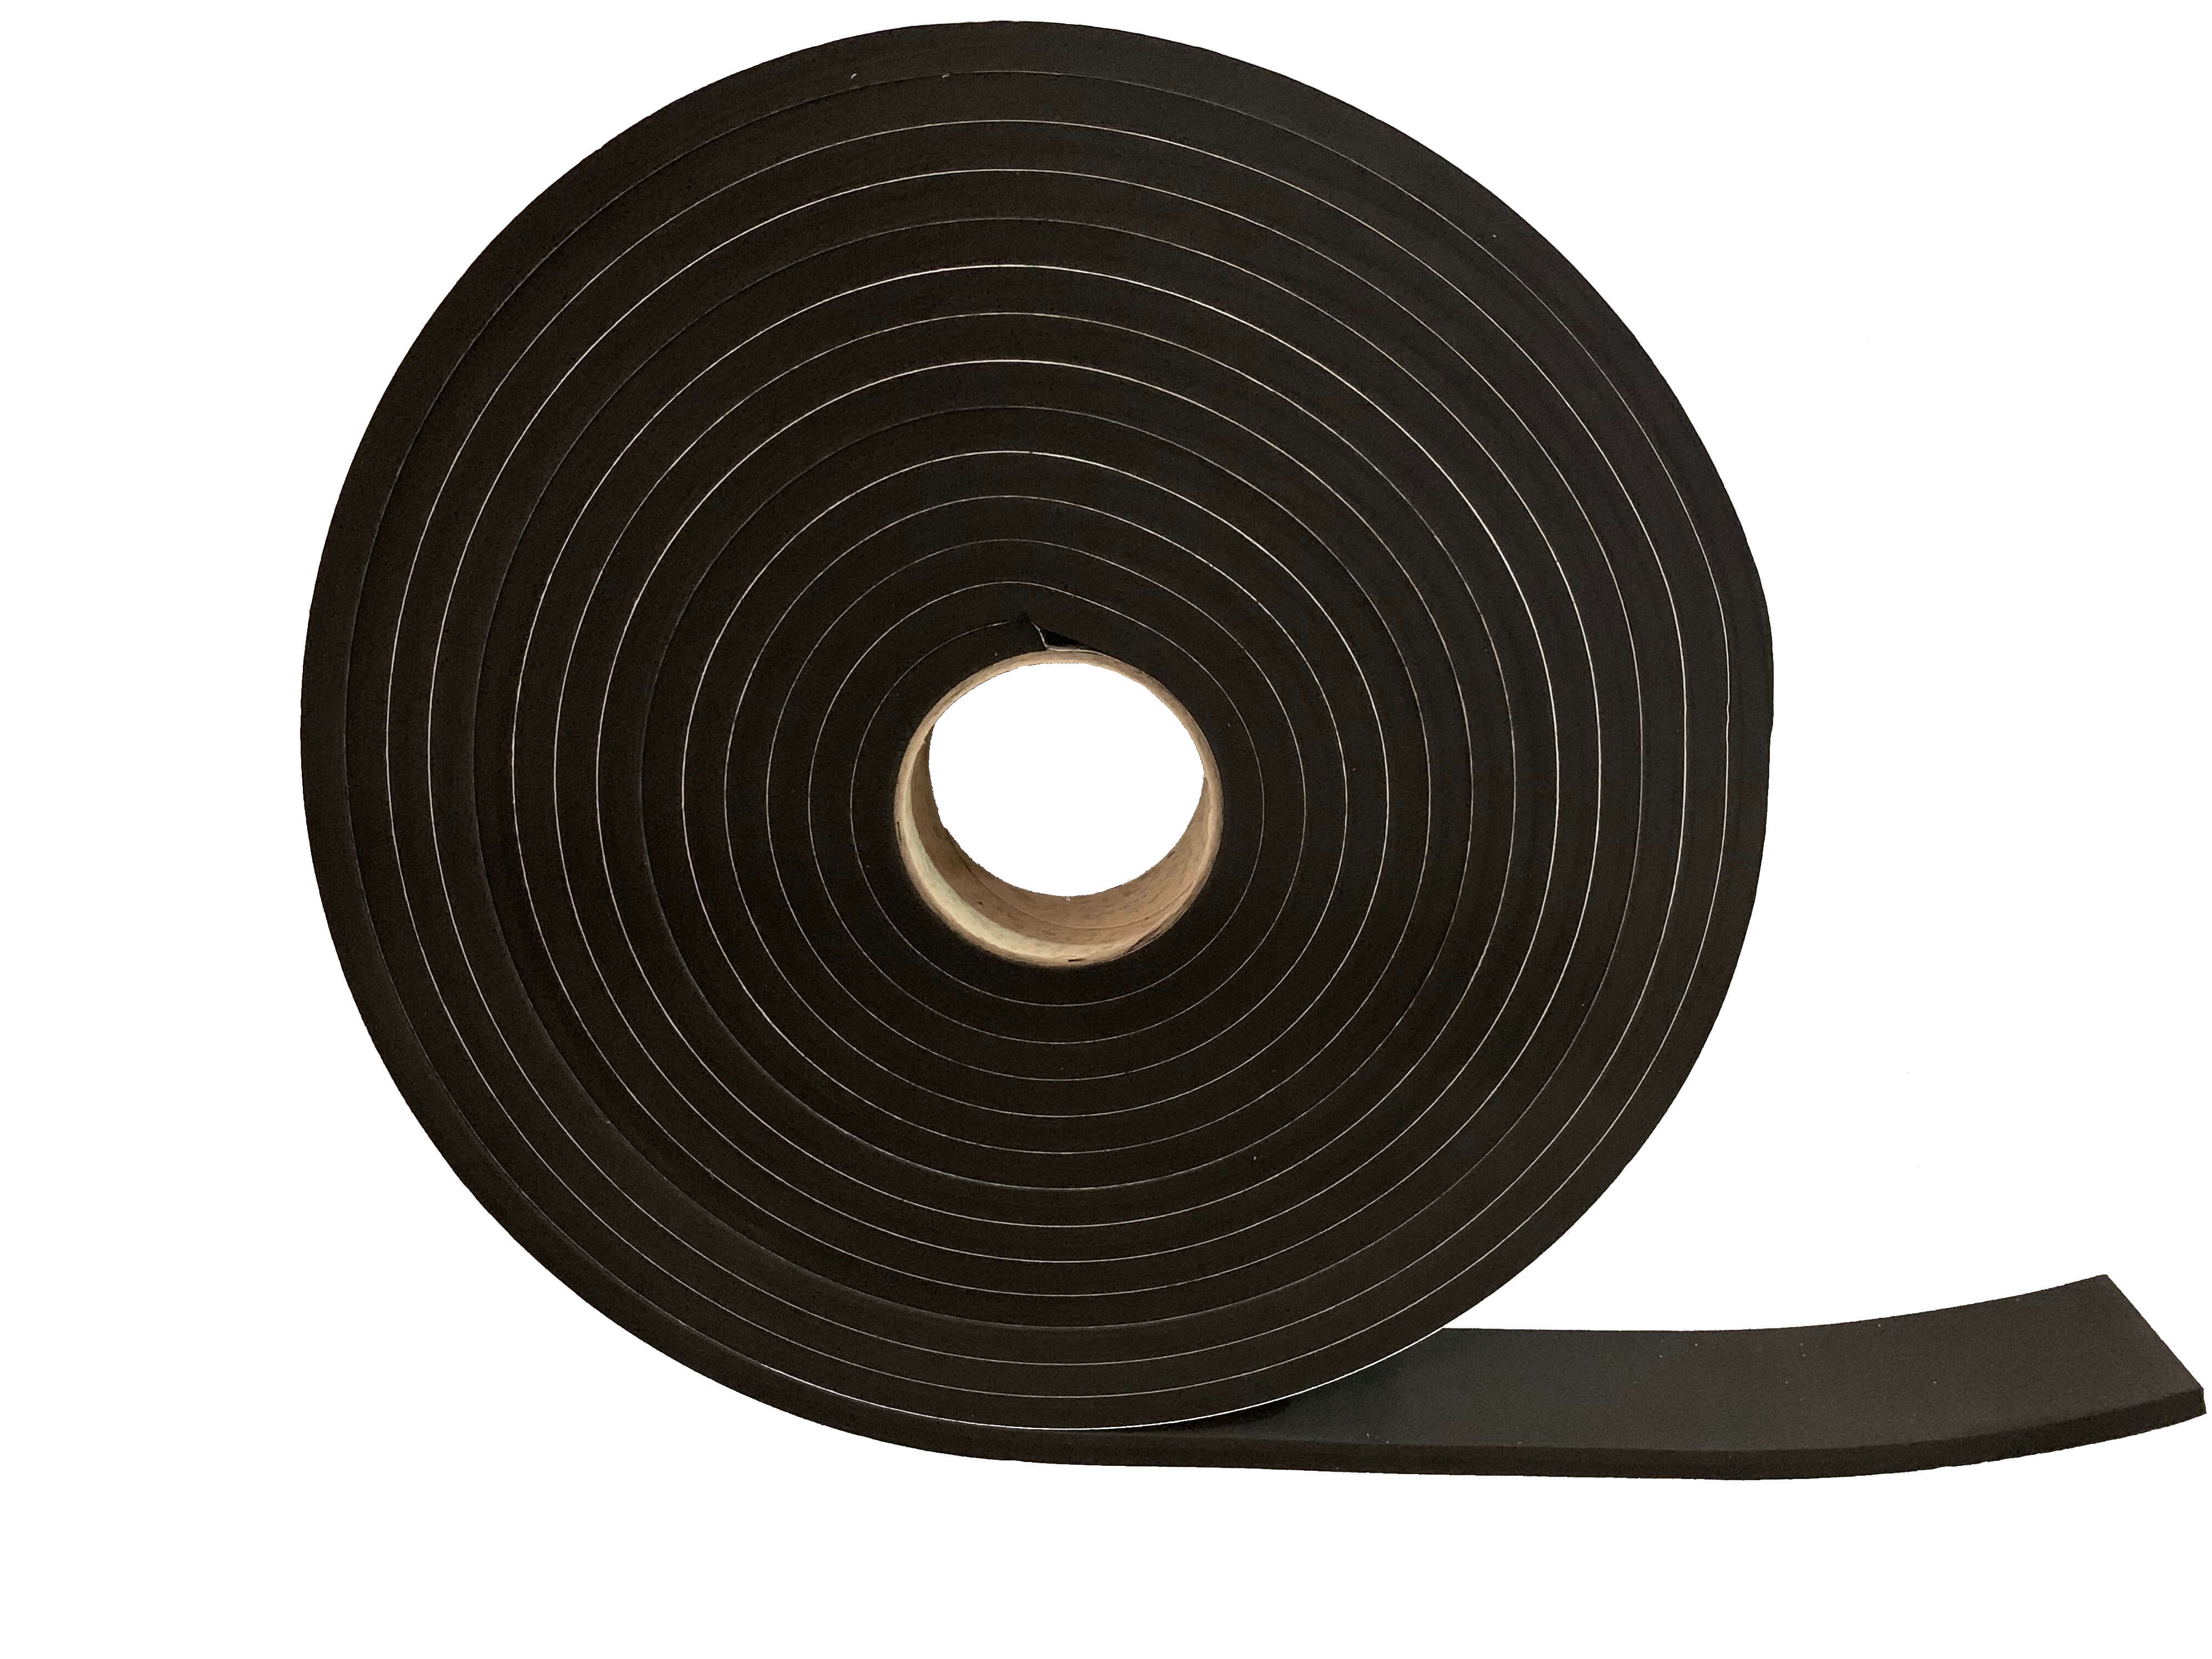 Widerstandsfähiges Dichtungsband – 10 mm dick x 50 mm breit x 10 m lang